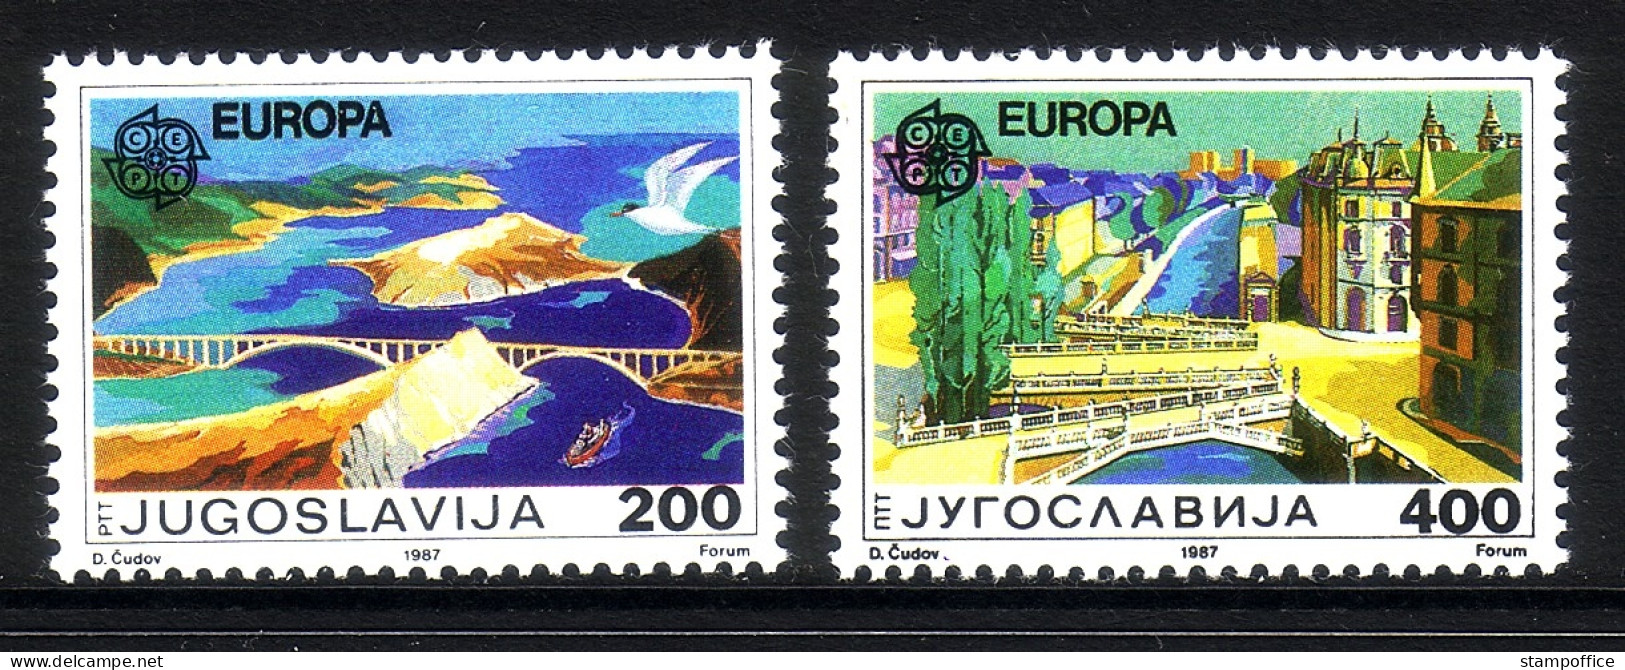 JUGOSLAWIEN MI-NR. 2219-2220 POSTFRISCH(MINT) EUROPA 1987 MODERNE ARCHITEKTUR BRÜCKEN - 1987